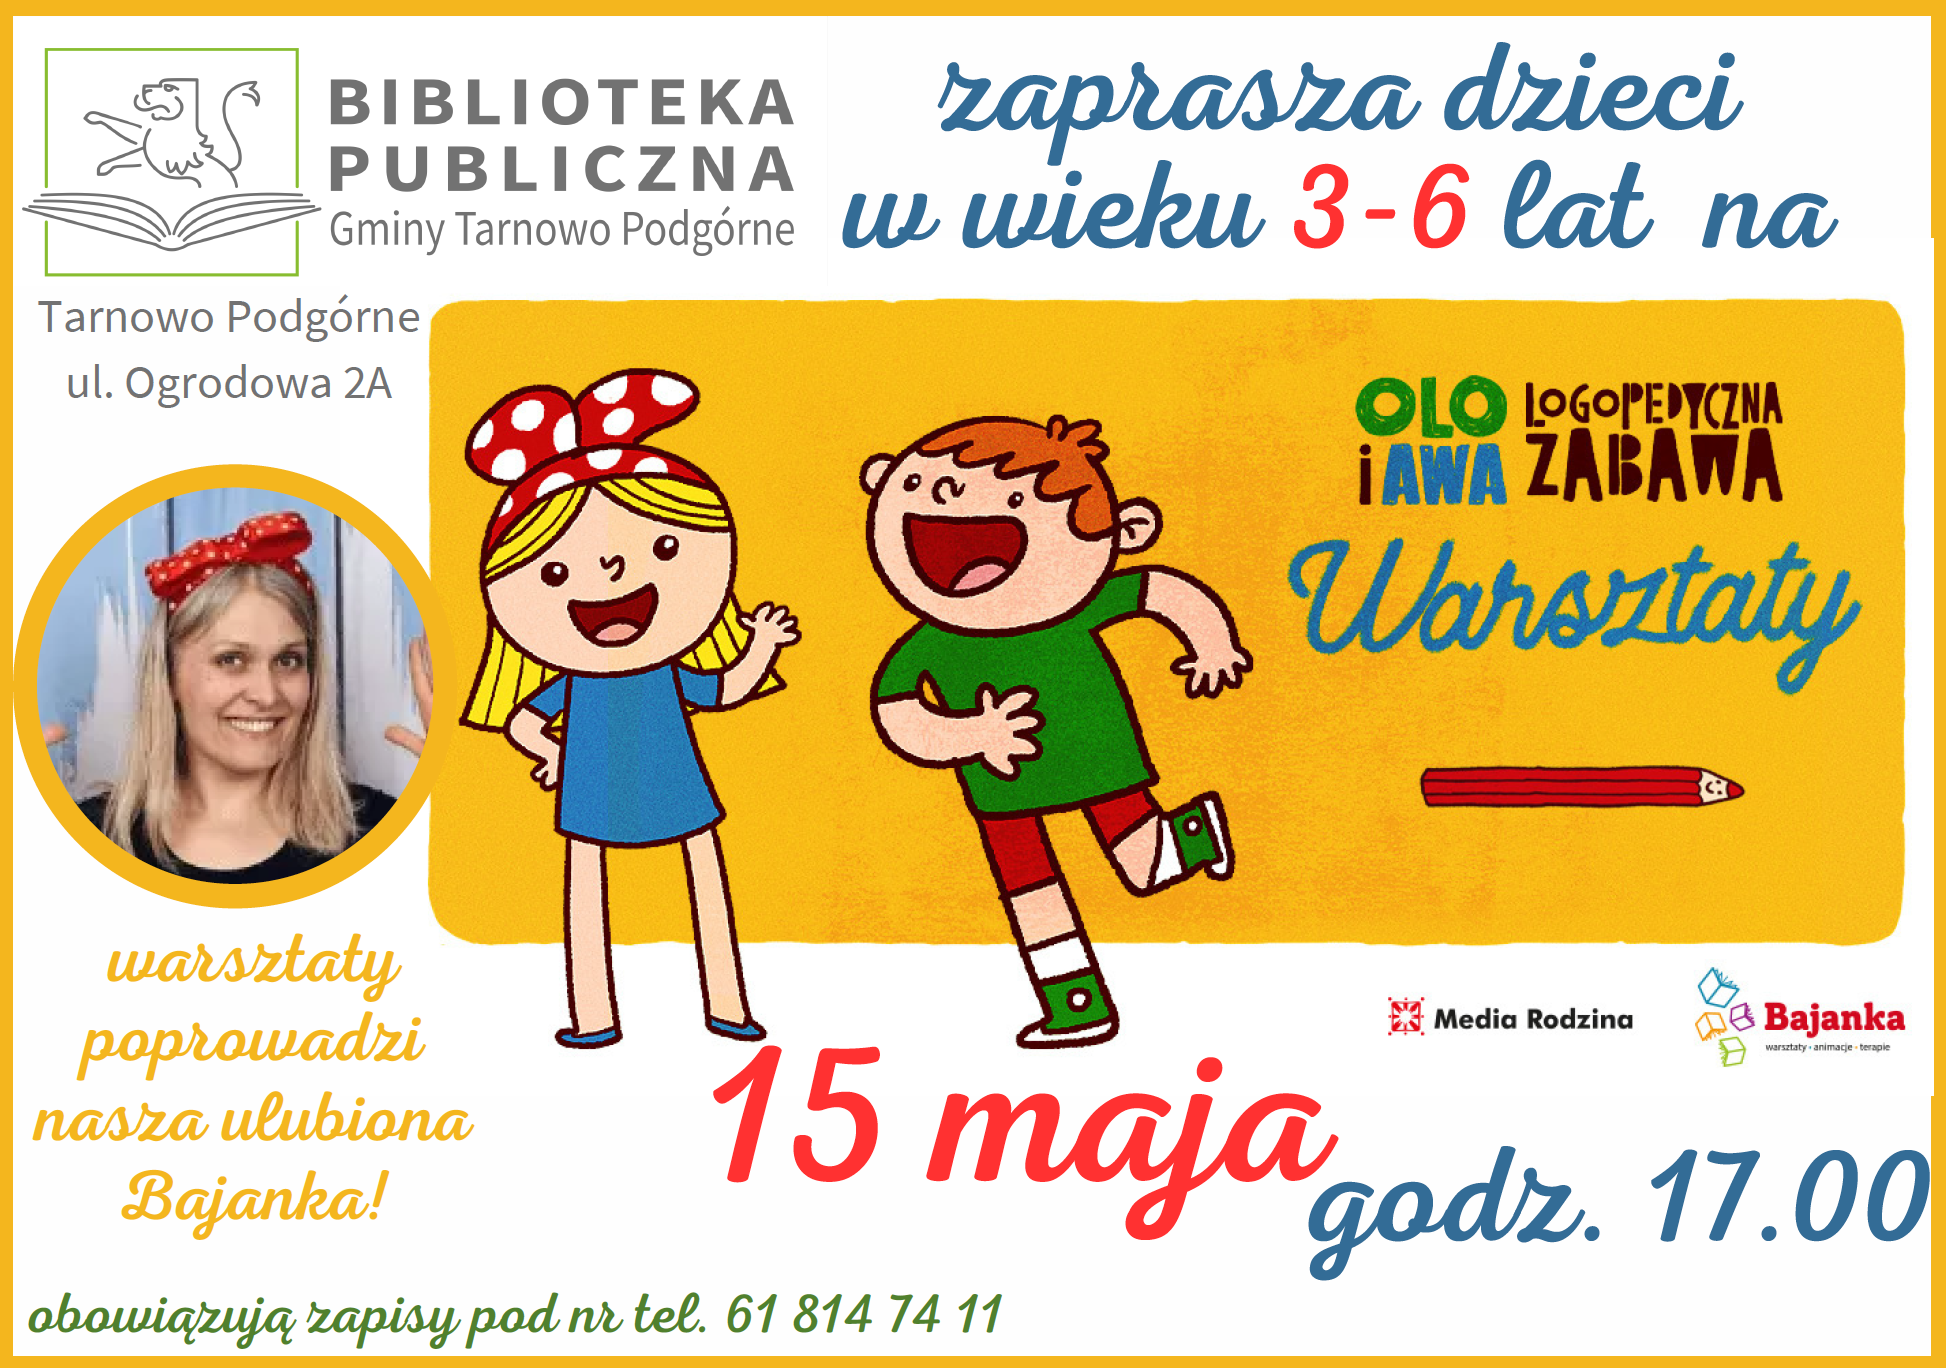 15 maja o godzinie 17:00 zapraszamy do Biblioteki w Tarnowie Podgórnym, najmłodszych czytelników na warsztaty z  bardzo dobrze znaną i uwielbianą Bajanką. Tym razem do wspólnej zabawy zapraszają Olo i Awa oraz ich sympatyczna rodzinka. Na spotkaniu na pewno nie zabraknie ciekawych historii, wspólnego śpiewania, zgadywania i pokazywania. Warsztaty skierowane są do dzieci w wieku 3 -6 lat. Na warsztaty obowiązują zapisy pod nr telefonu 61 814 74 11. Liczba miejsc jest ograniczona.